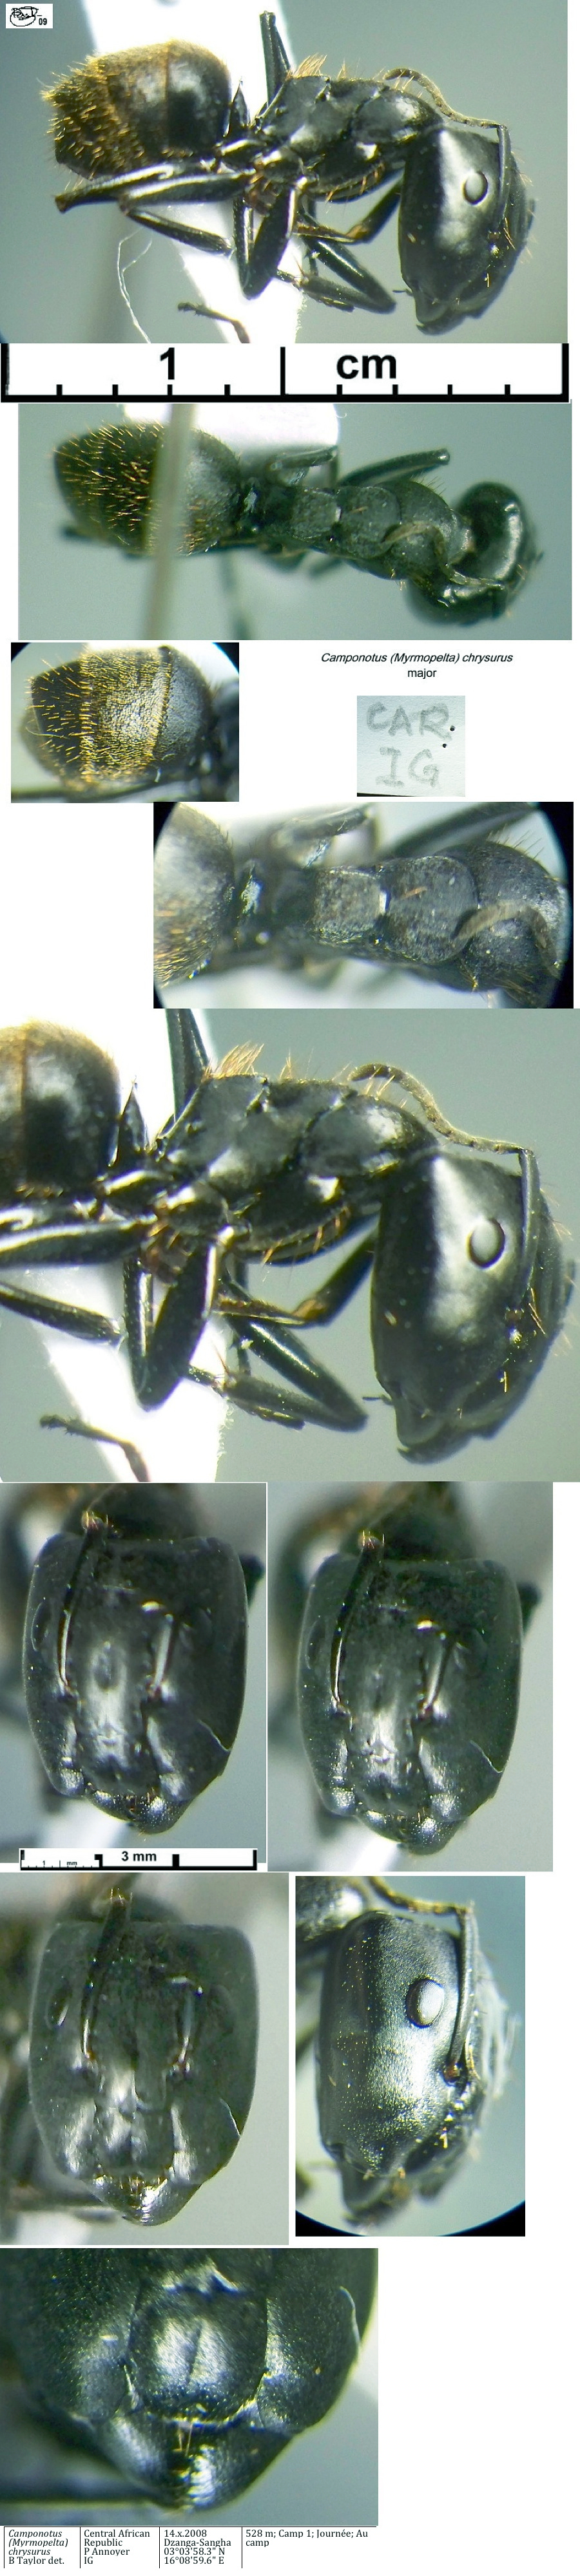 {Camponotus chrysurus yvonnae major}